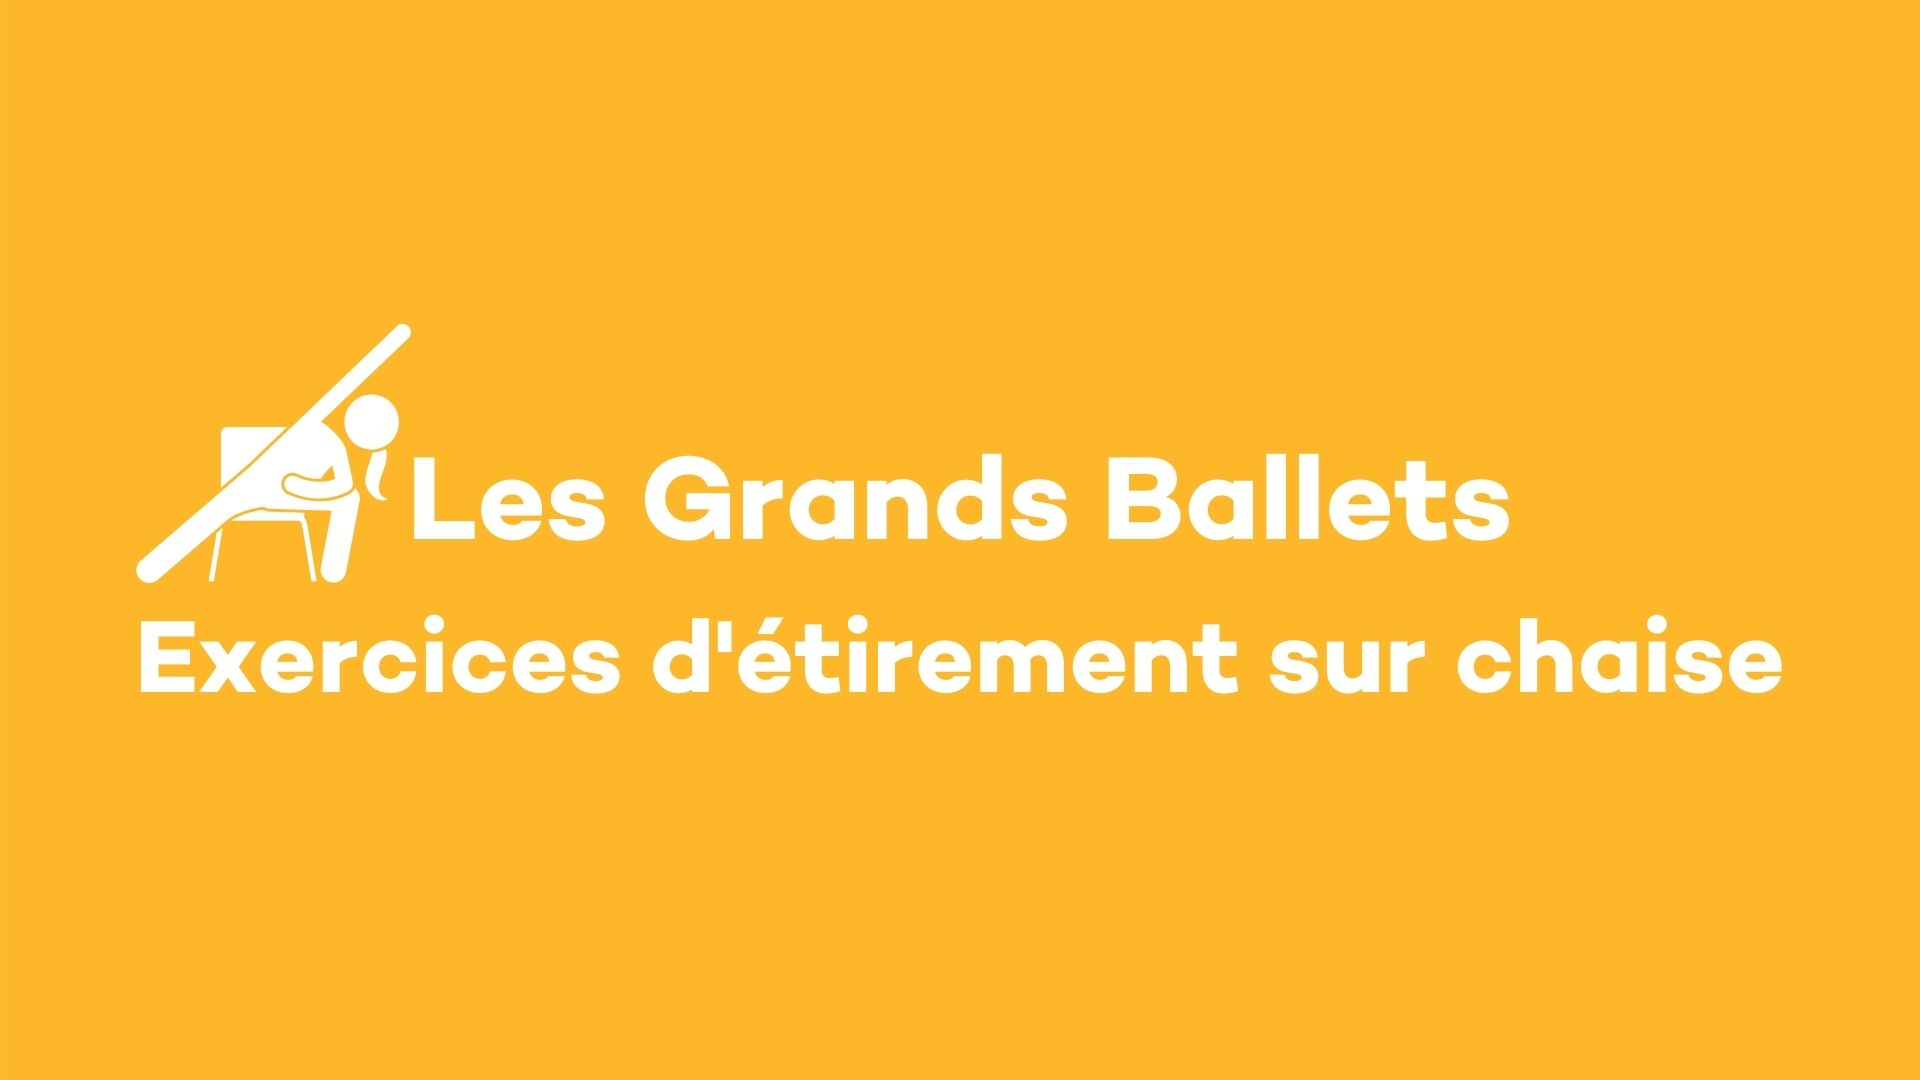 Les Grands Ballets: Exercices d'étirements sur chaise